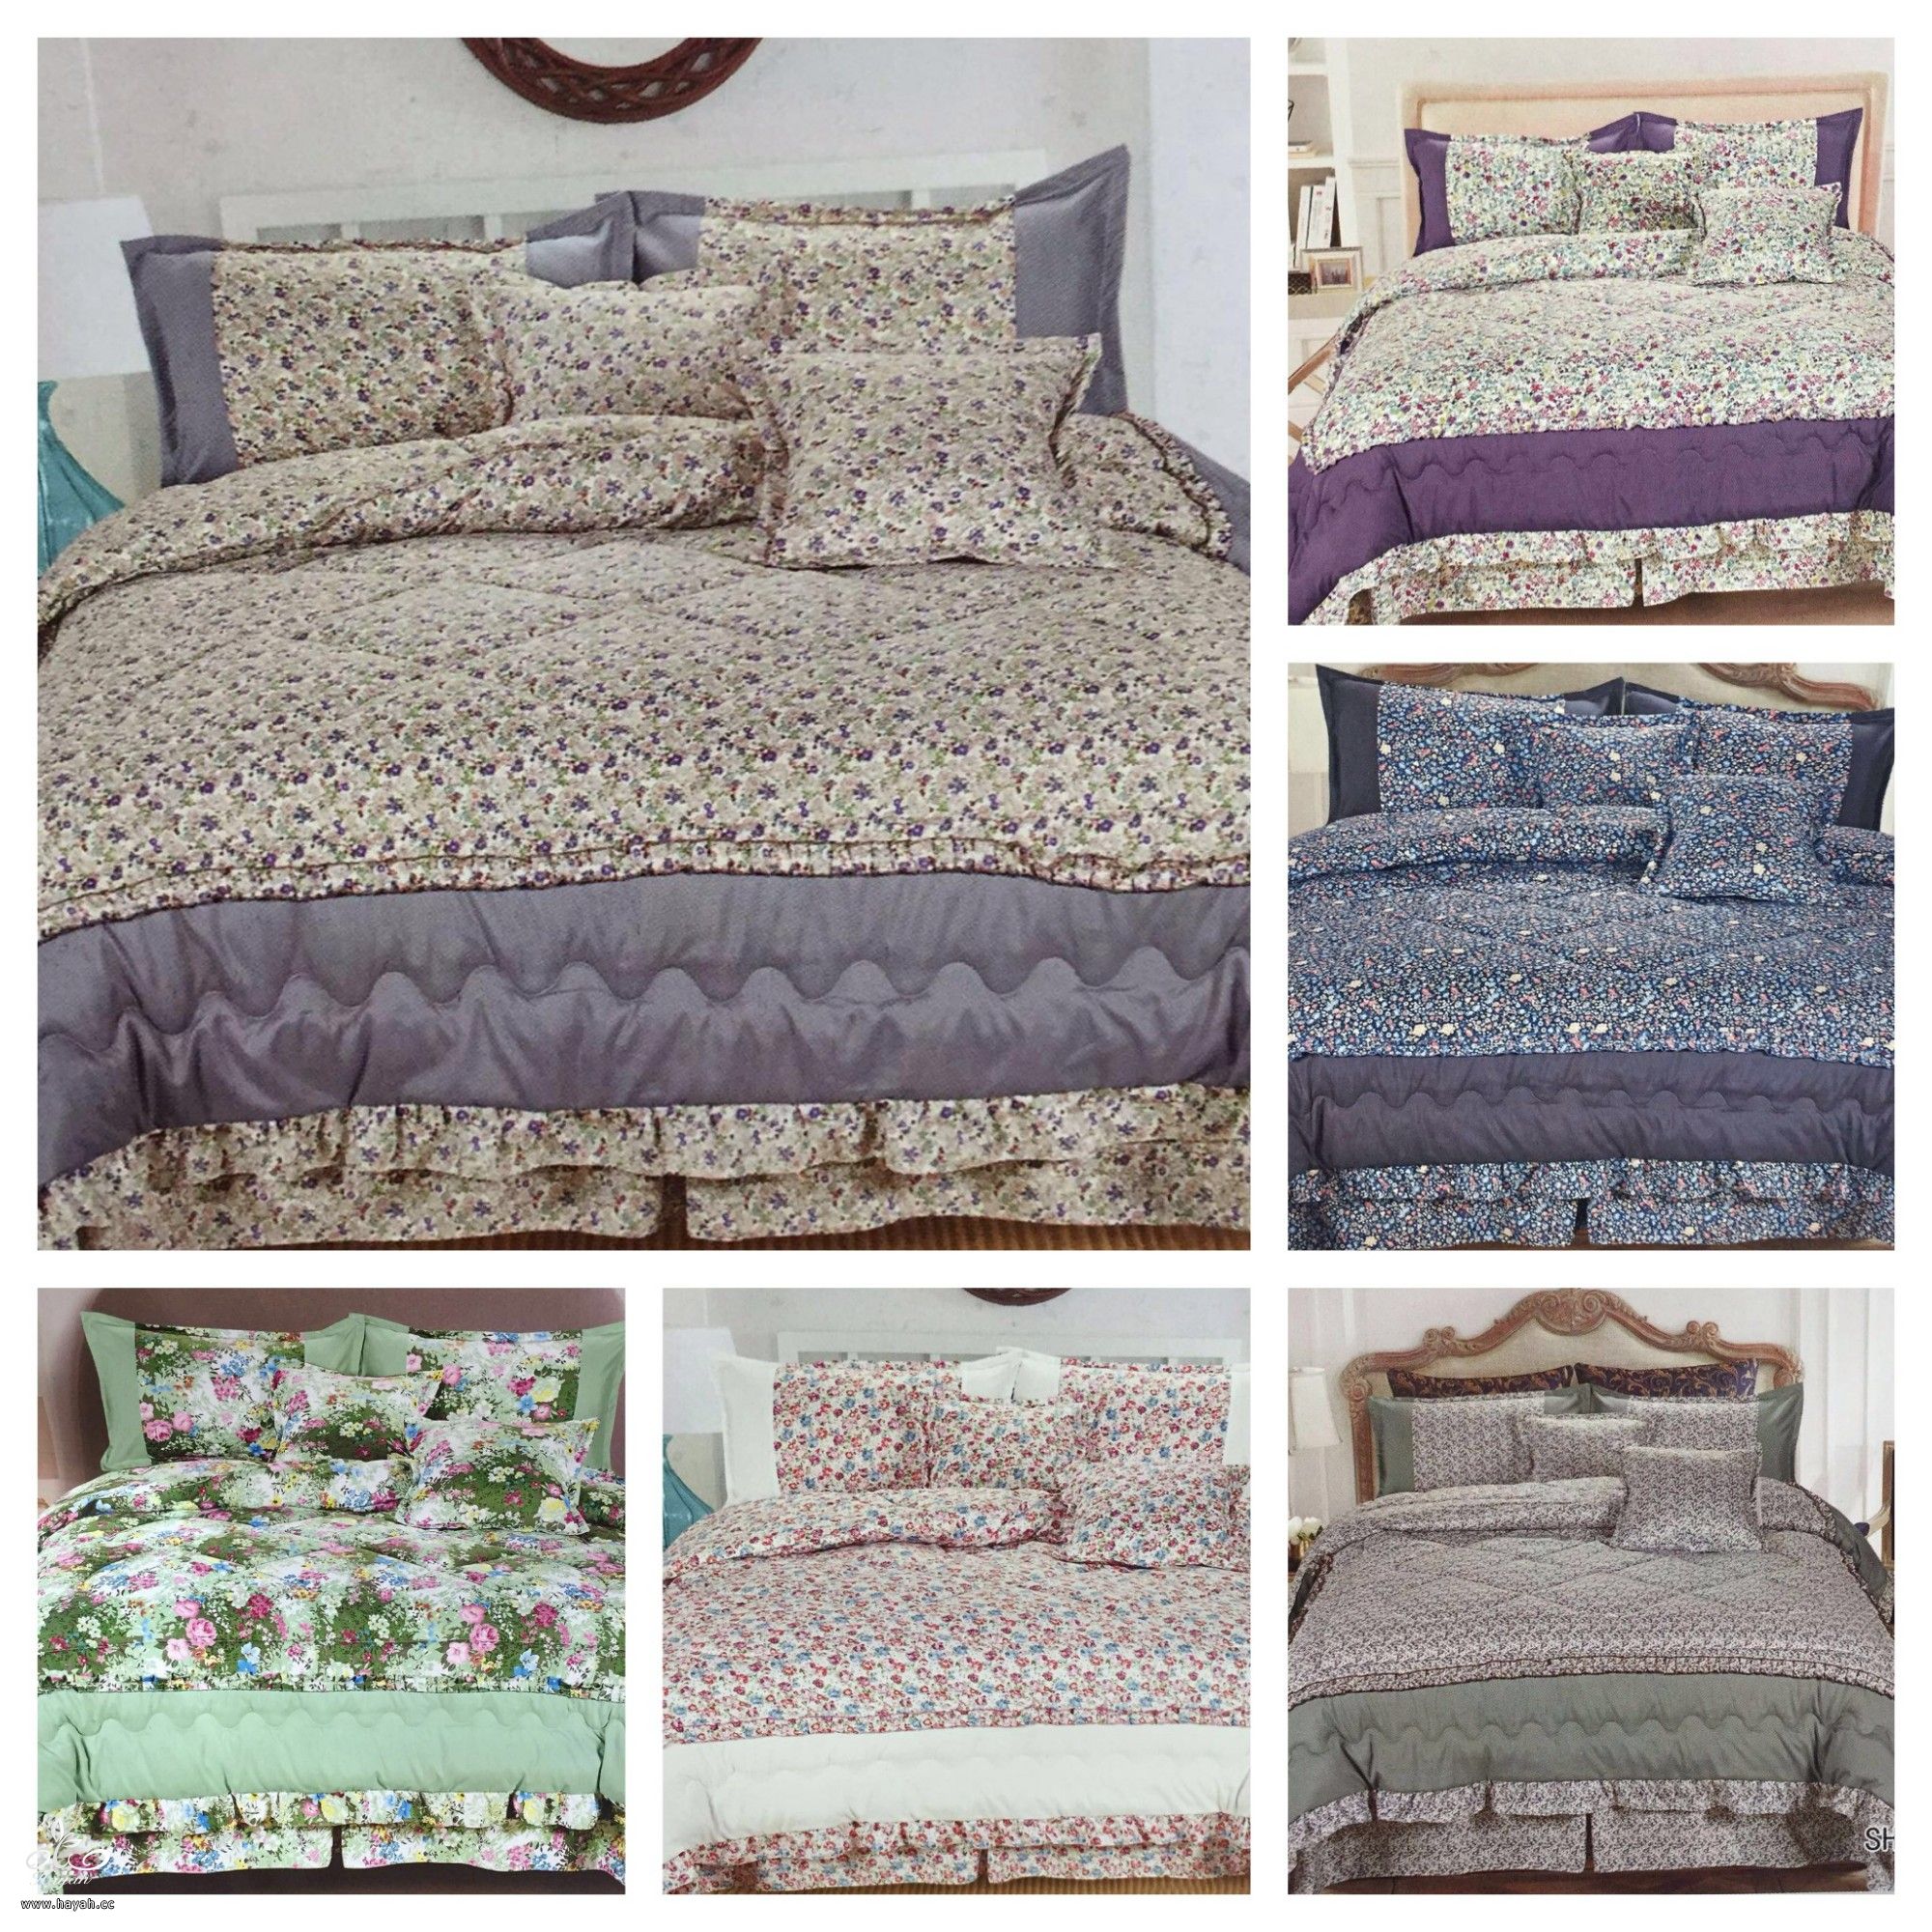 مفارش سرير منووعه للعيد مفارش سرير تشكيله جميله للعيد hayahcc_1464524910_161.jpg